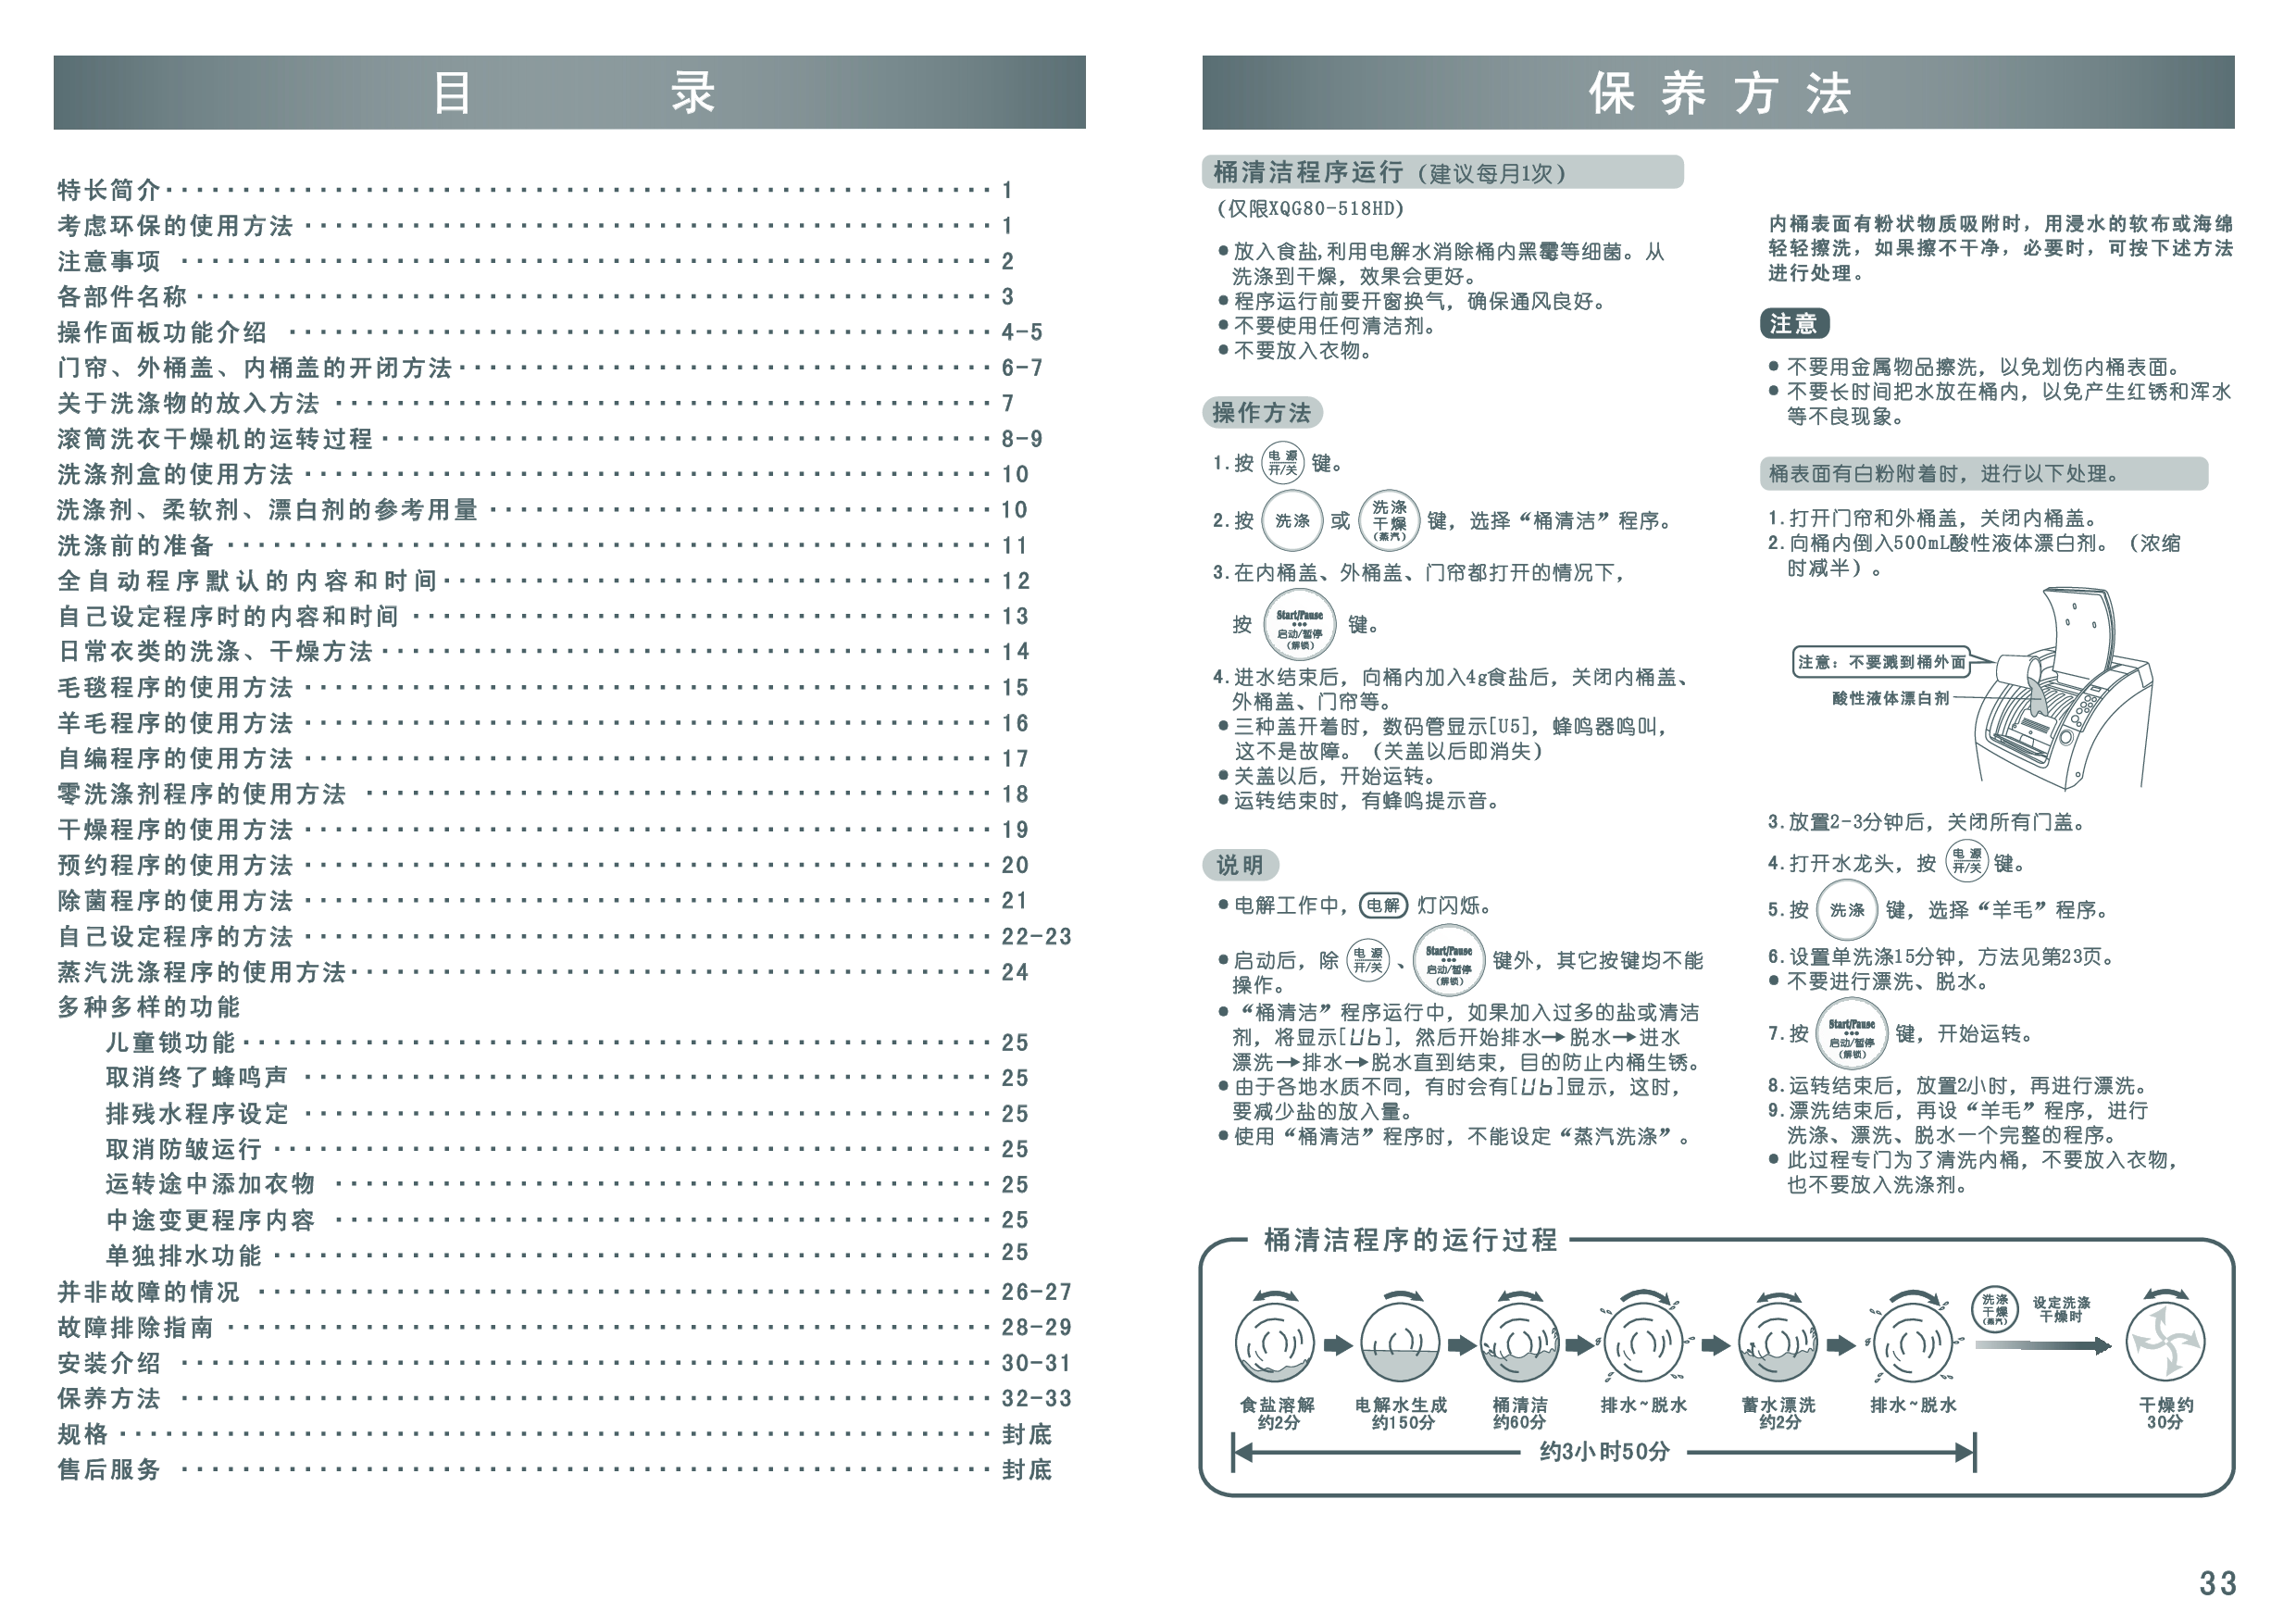 三洋 Sanyo XQB80-518HD 用户指南 第1页